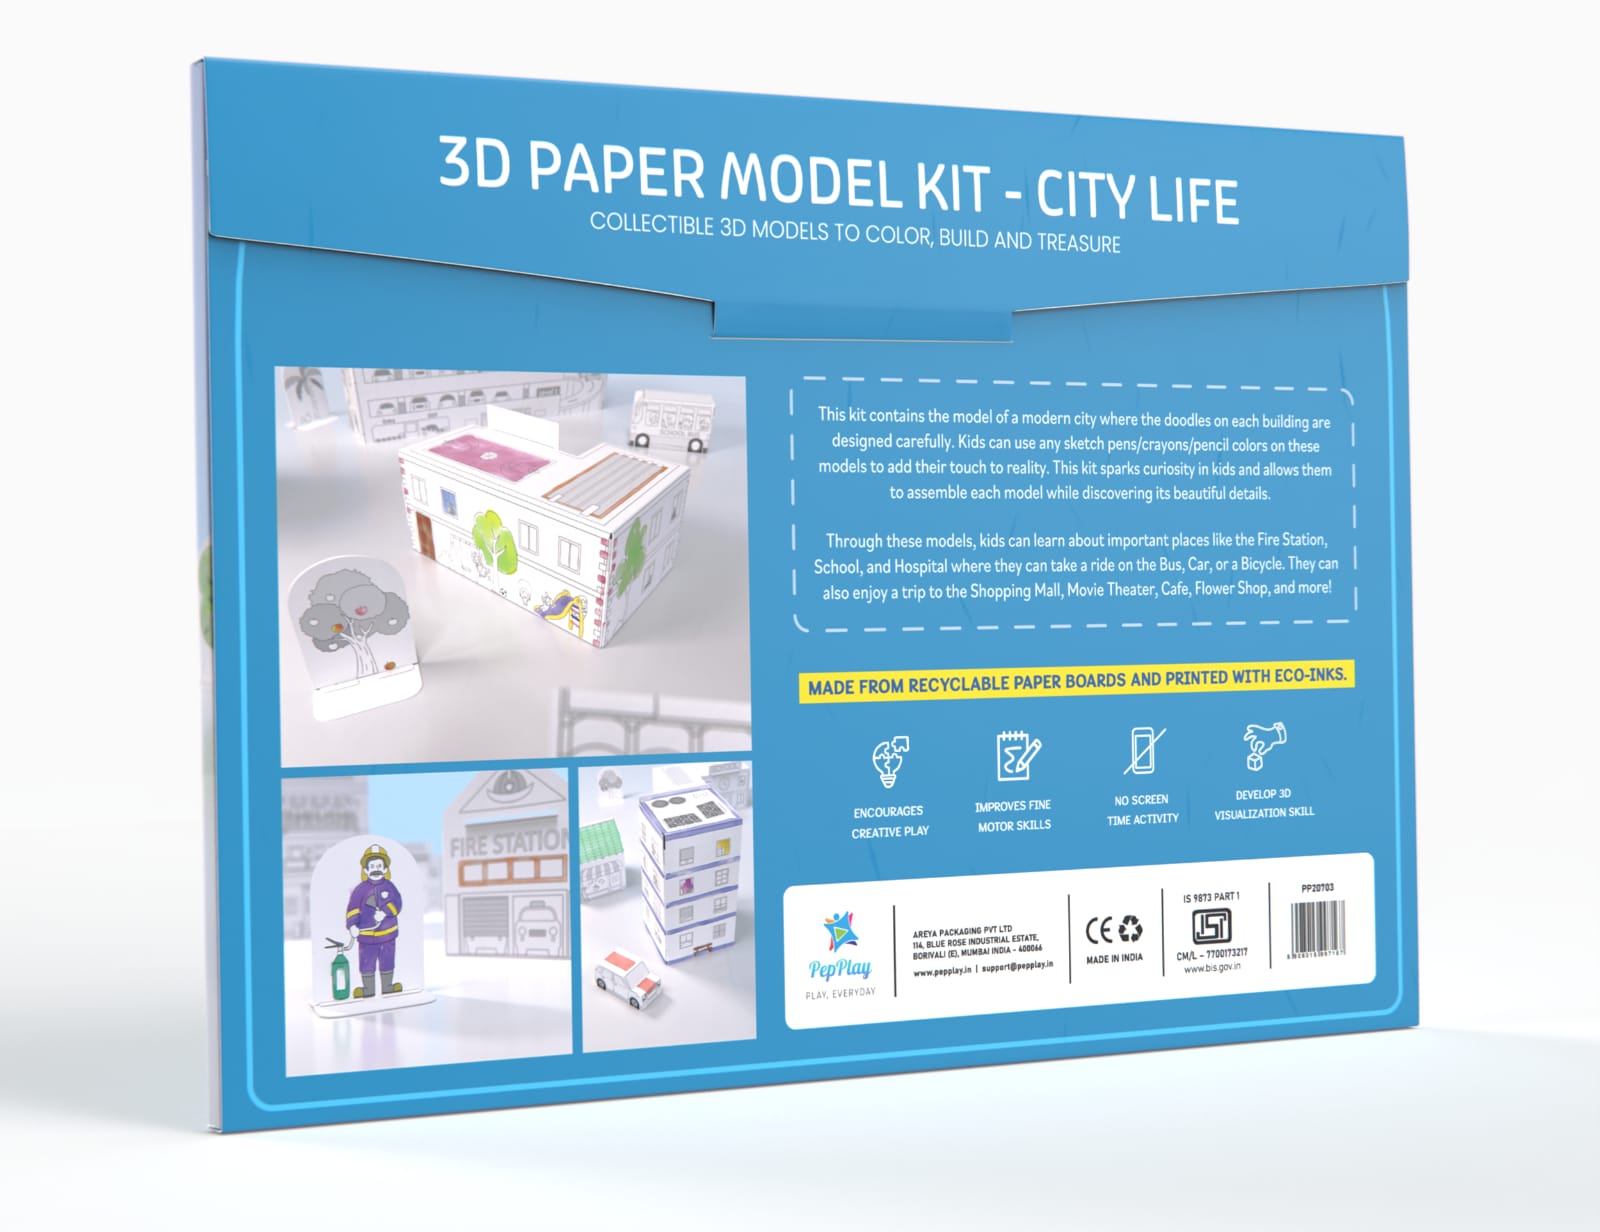 Paper Model Kit